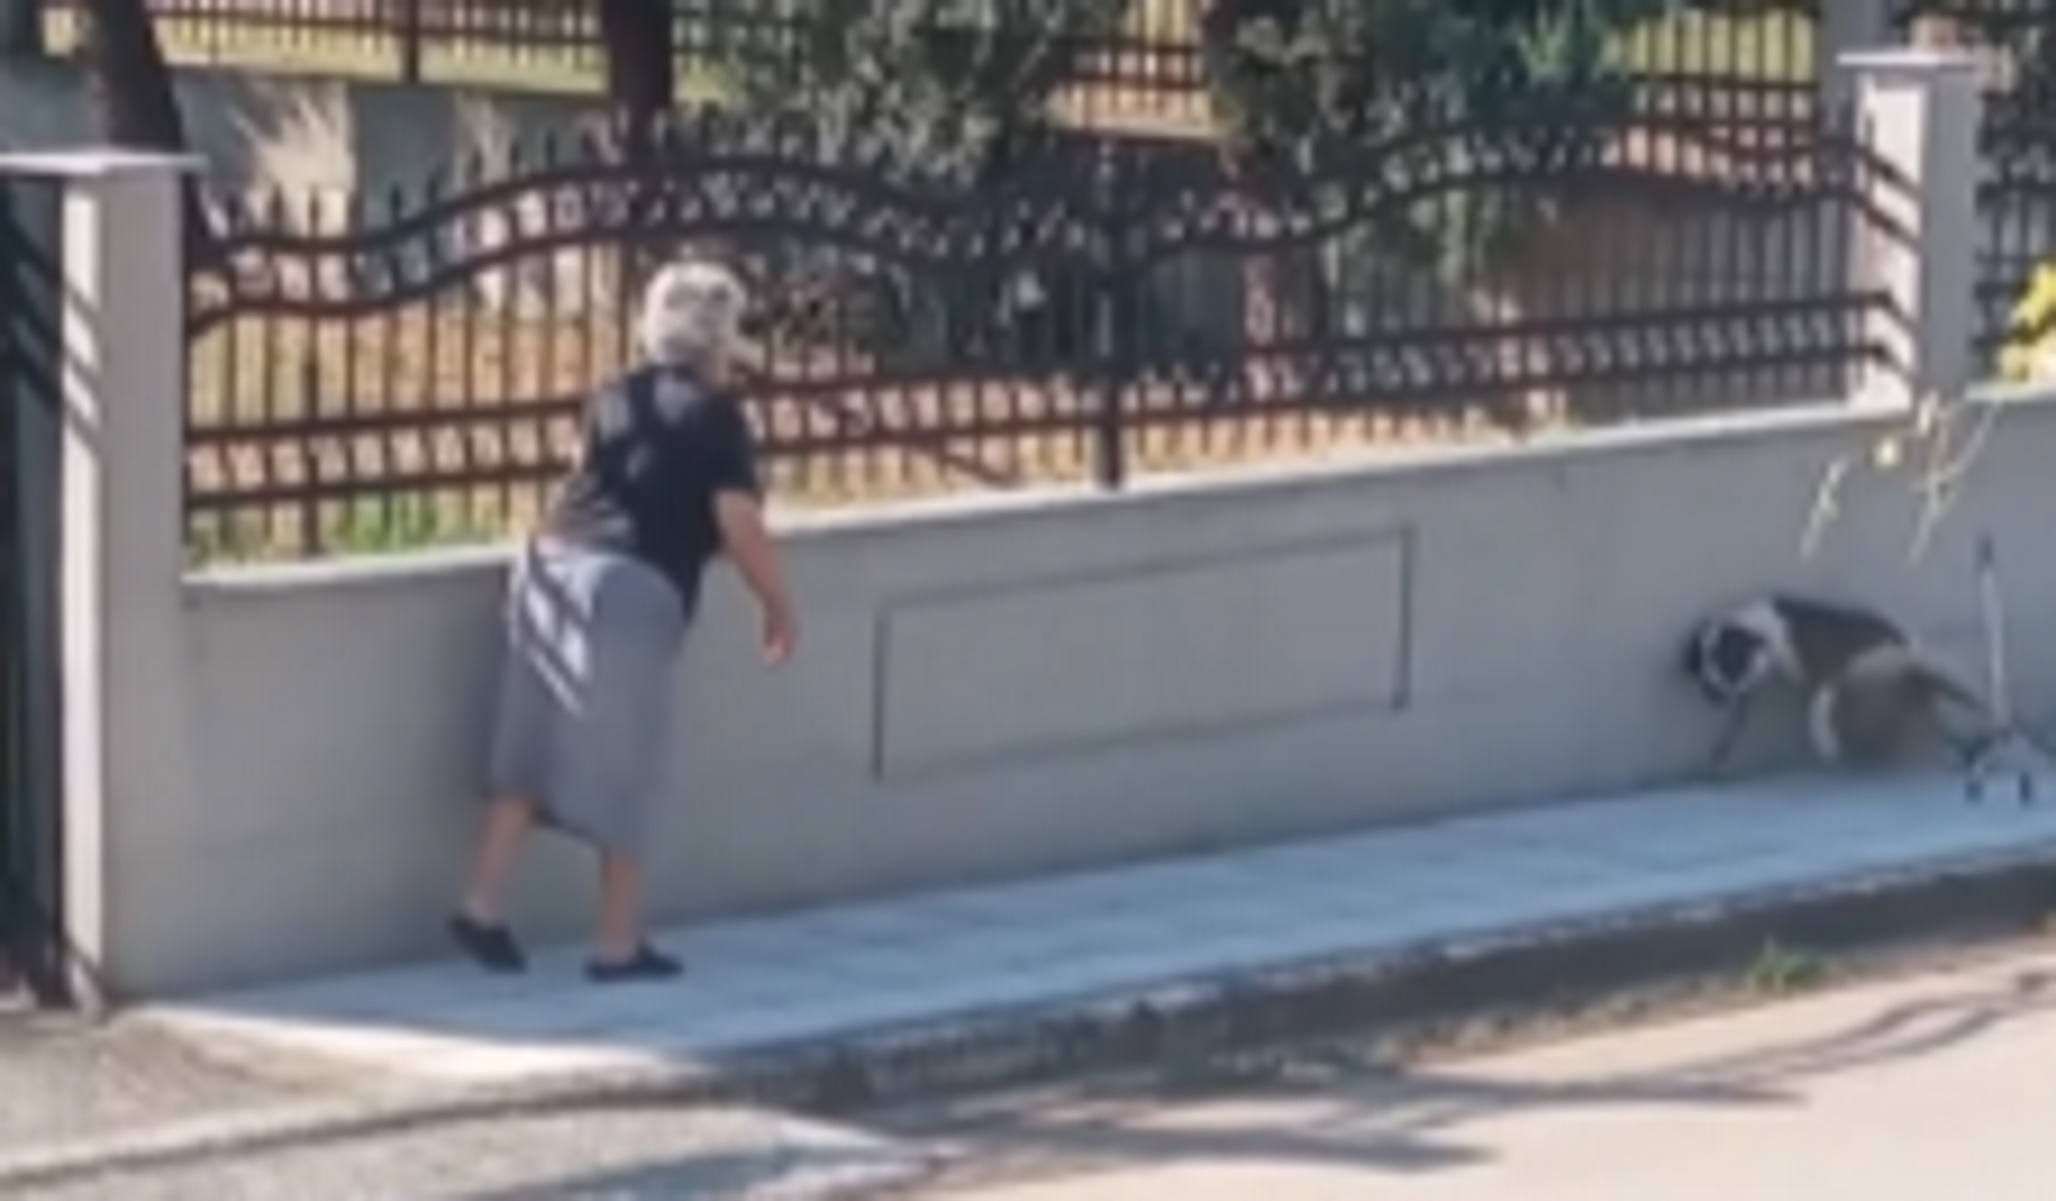 Λαγκαδάς Θεσσαλονίκης: Σάλος με βίντεο που δείχνει ηλικιωμένη να επιτίθεται σε σκύλο – Έντρομο το ζώο φεύγει κλαίγοντας